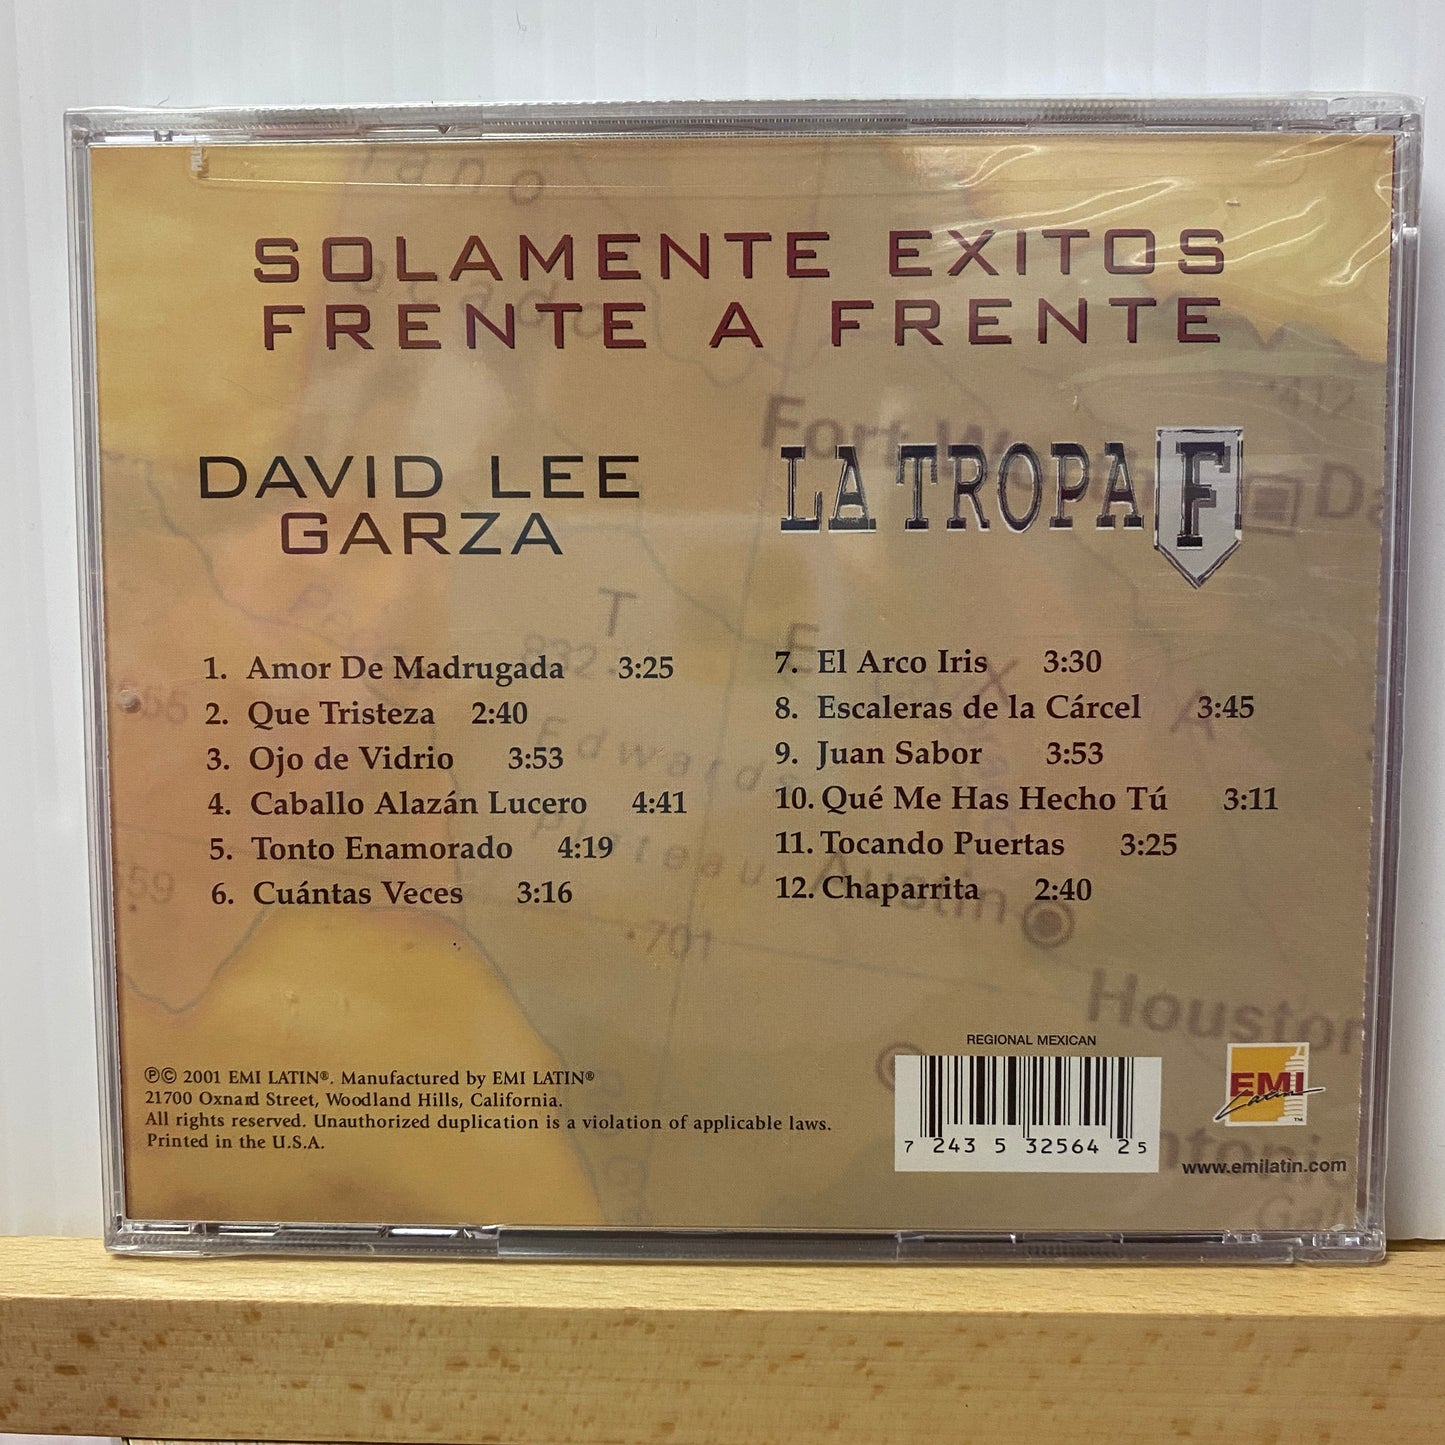 David Lee Garza &amp; Tropa F - Frente A Frente *2001 (CD)